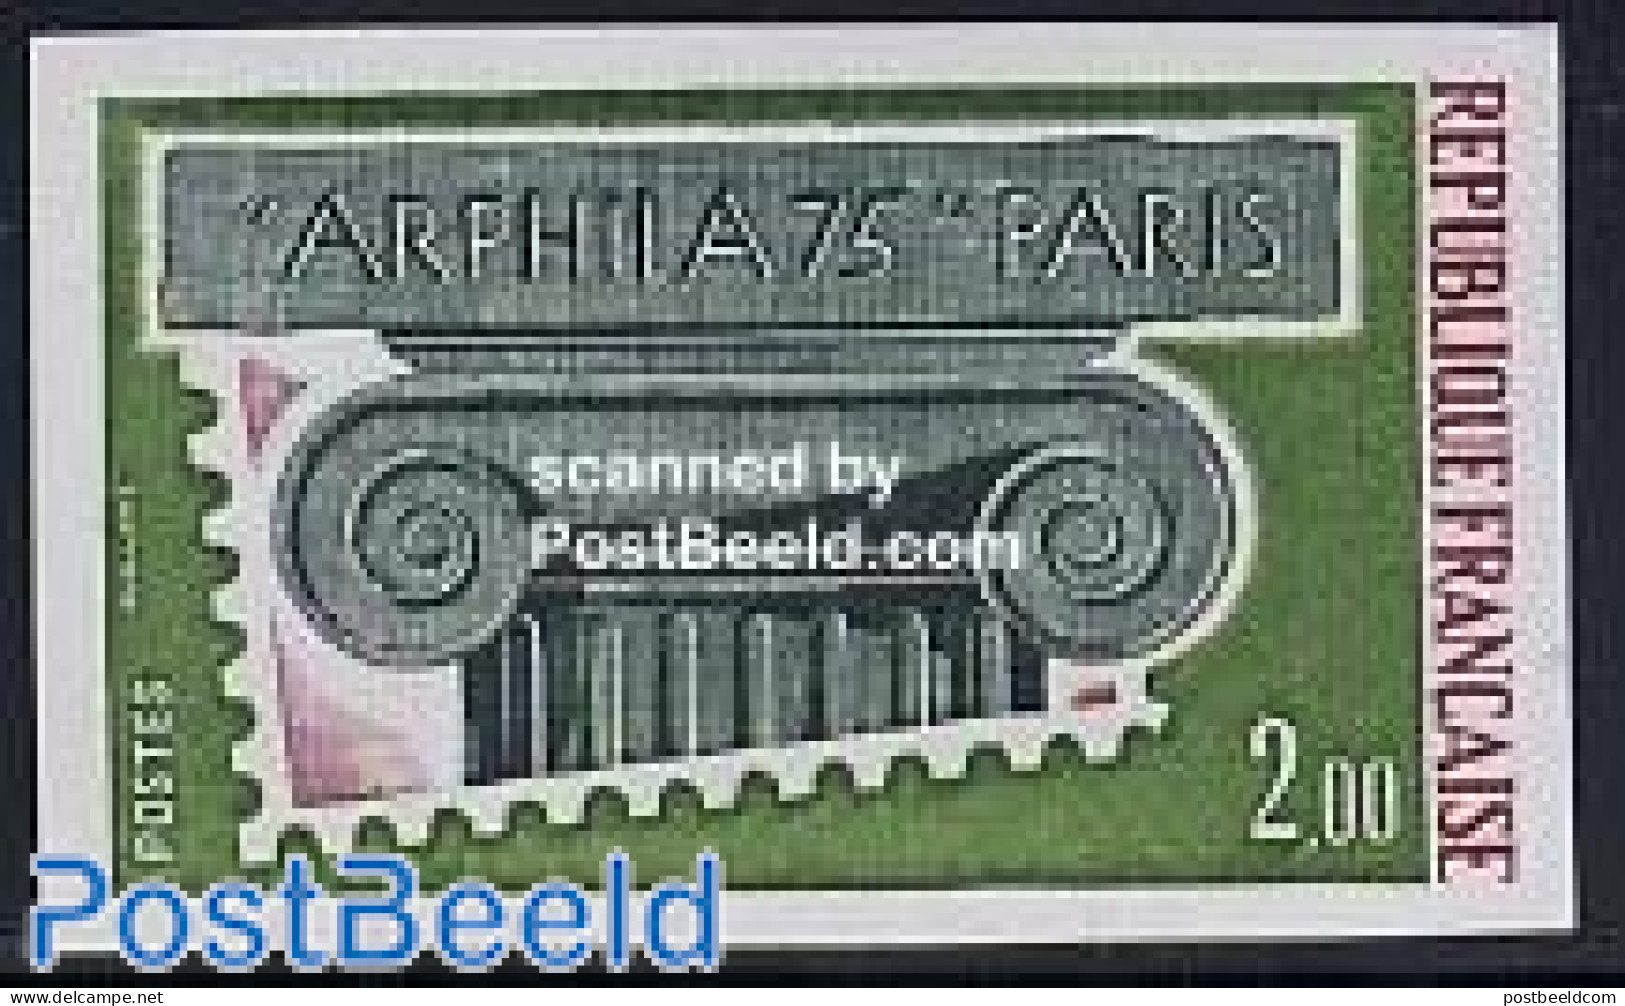 France 1975 Arphila 1v Imperforated, Mint NH, Philately - Ongebruikt